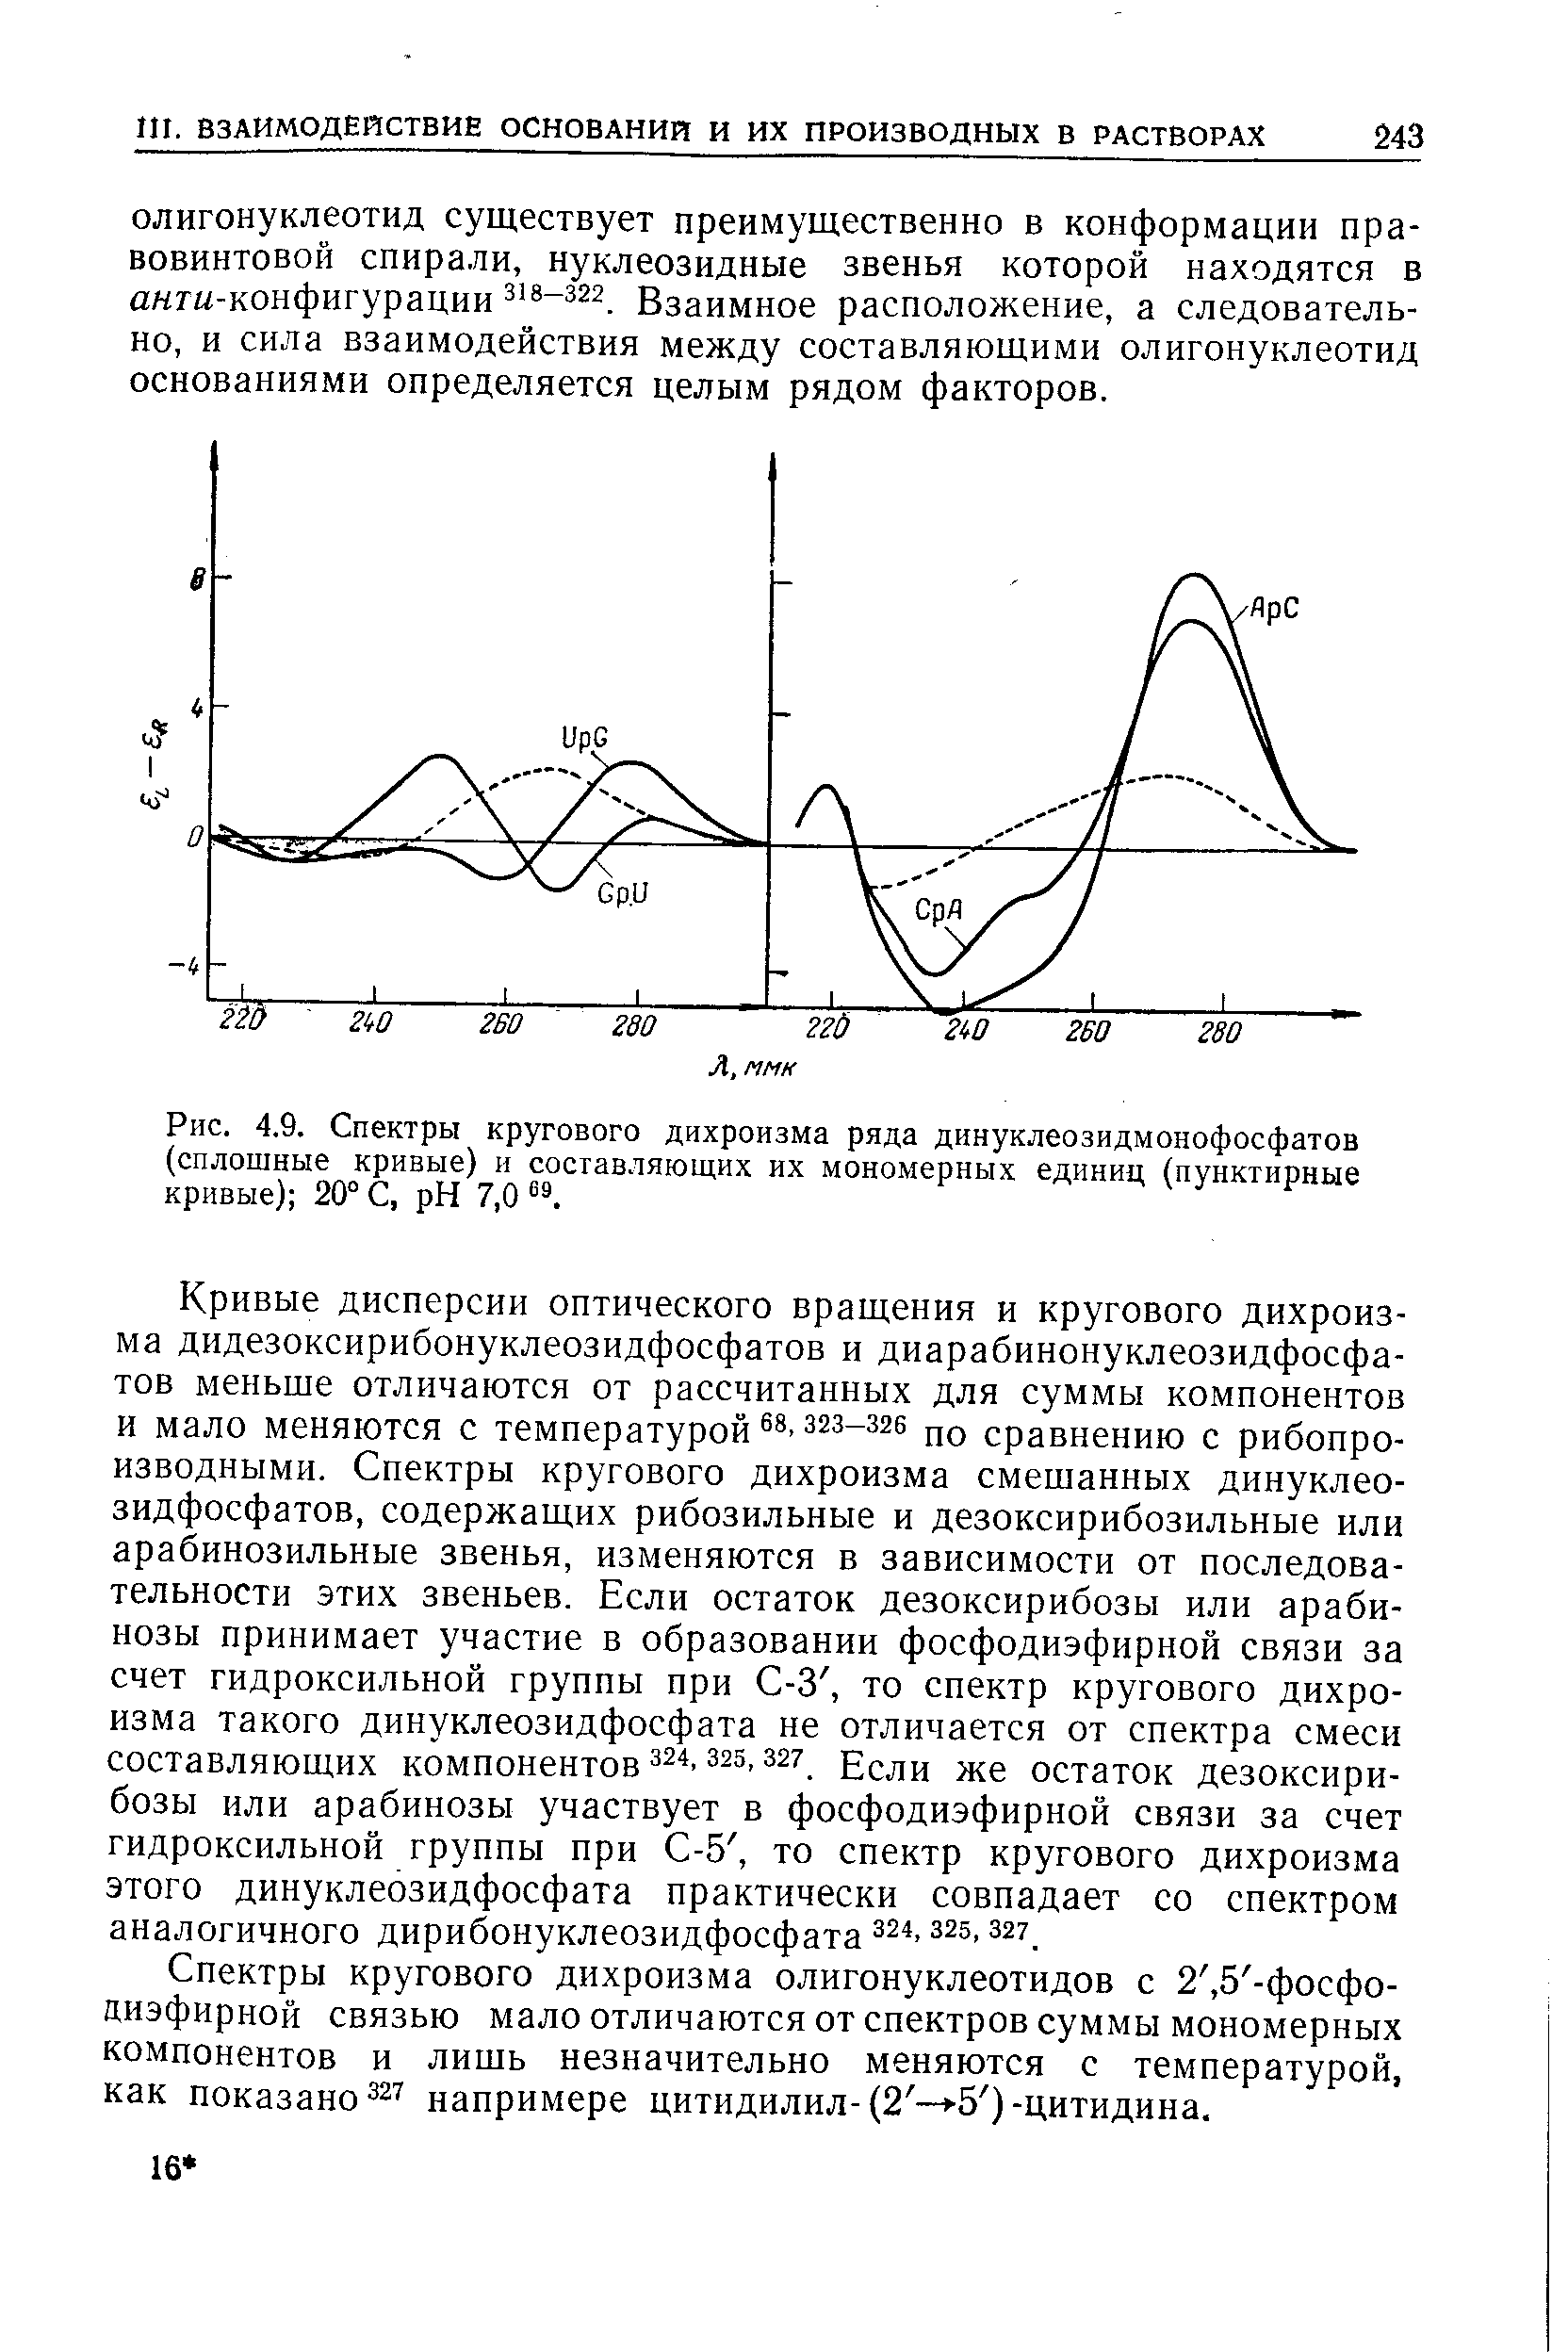 Спектры кругового дихроизма олигонуклеотидов с 2, 5 -фосфо-диэфирной связью мало отличаются от спектров суммы мономерных компонентов и лишь незначительно меняются с температурой, как показано 327 напримере цитидилил-(2 — -5 )-цитидина.